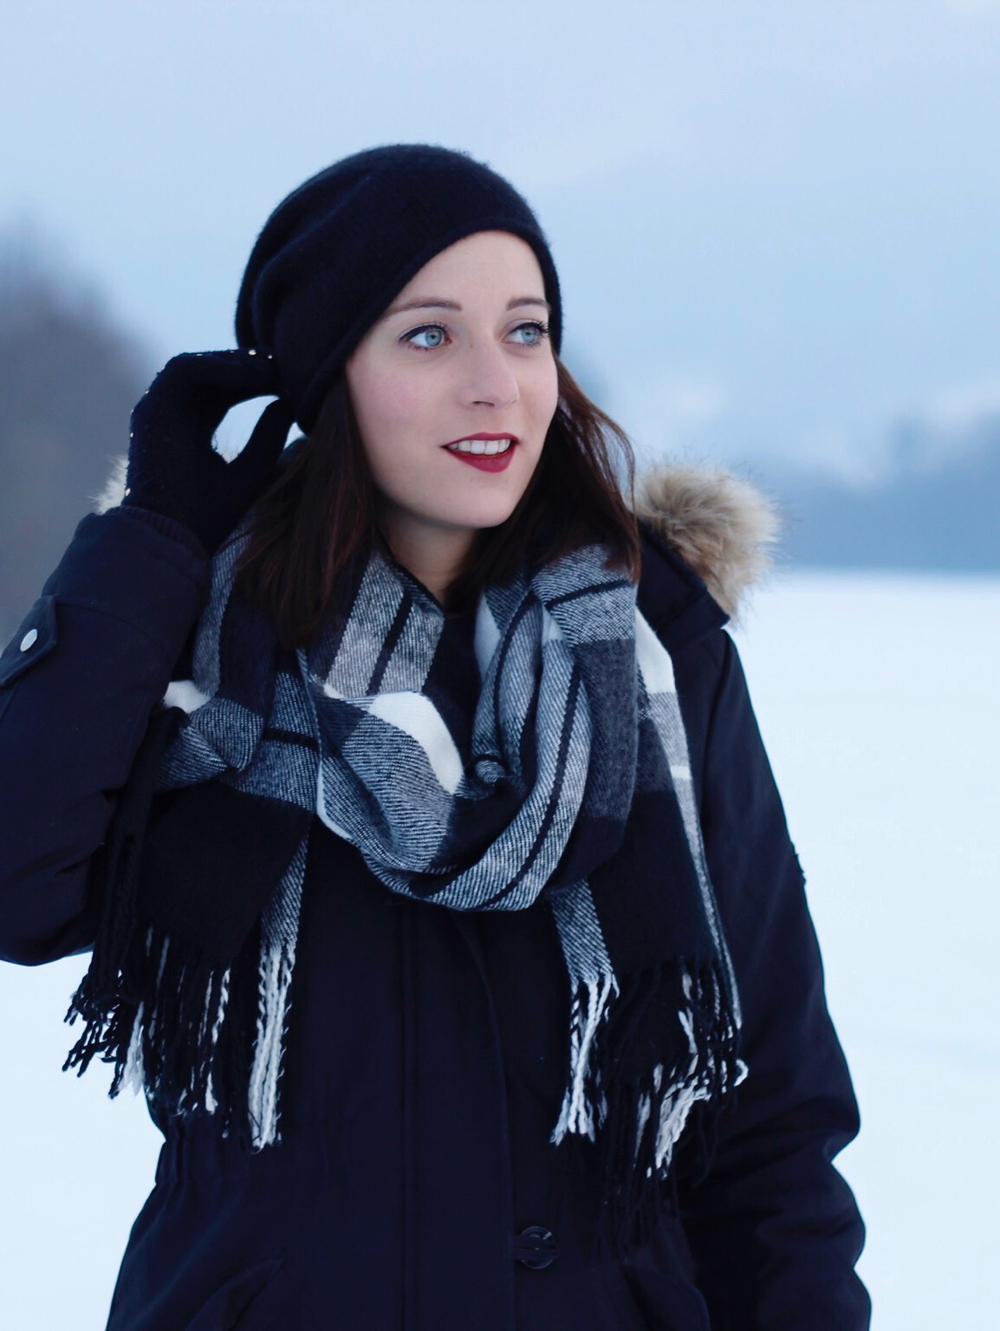 Beanie Mütze Haube Winter Schnee Süchtig nach Lifestyleblog Linz